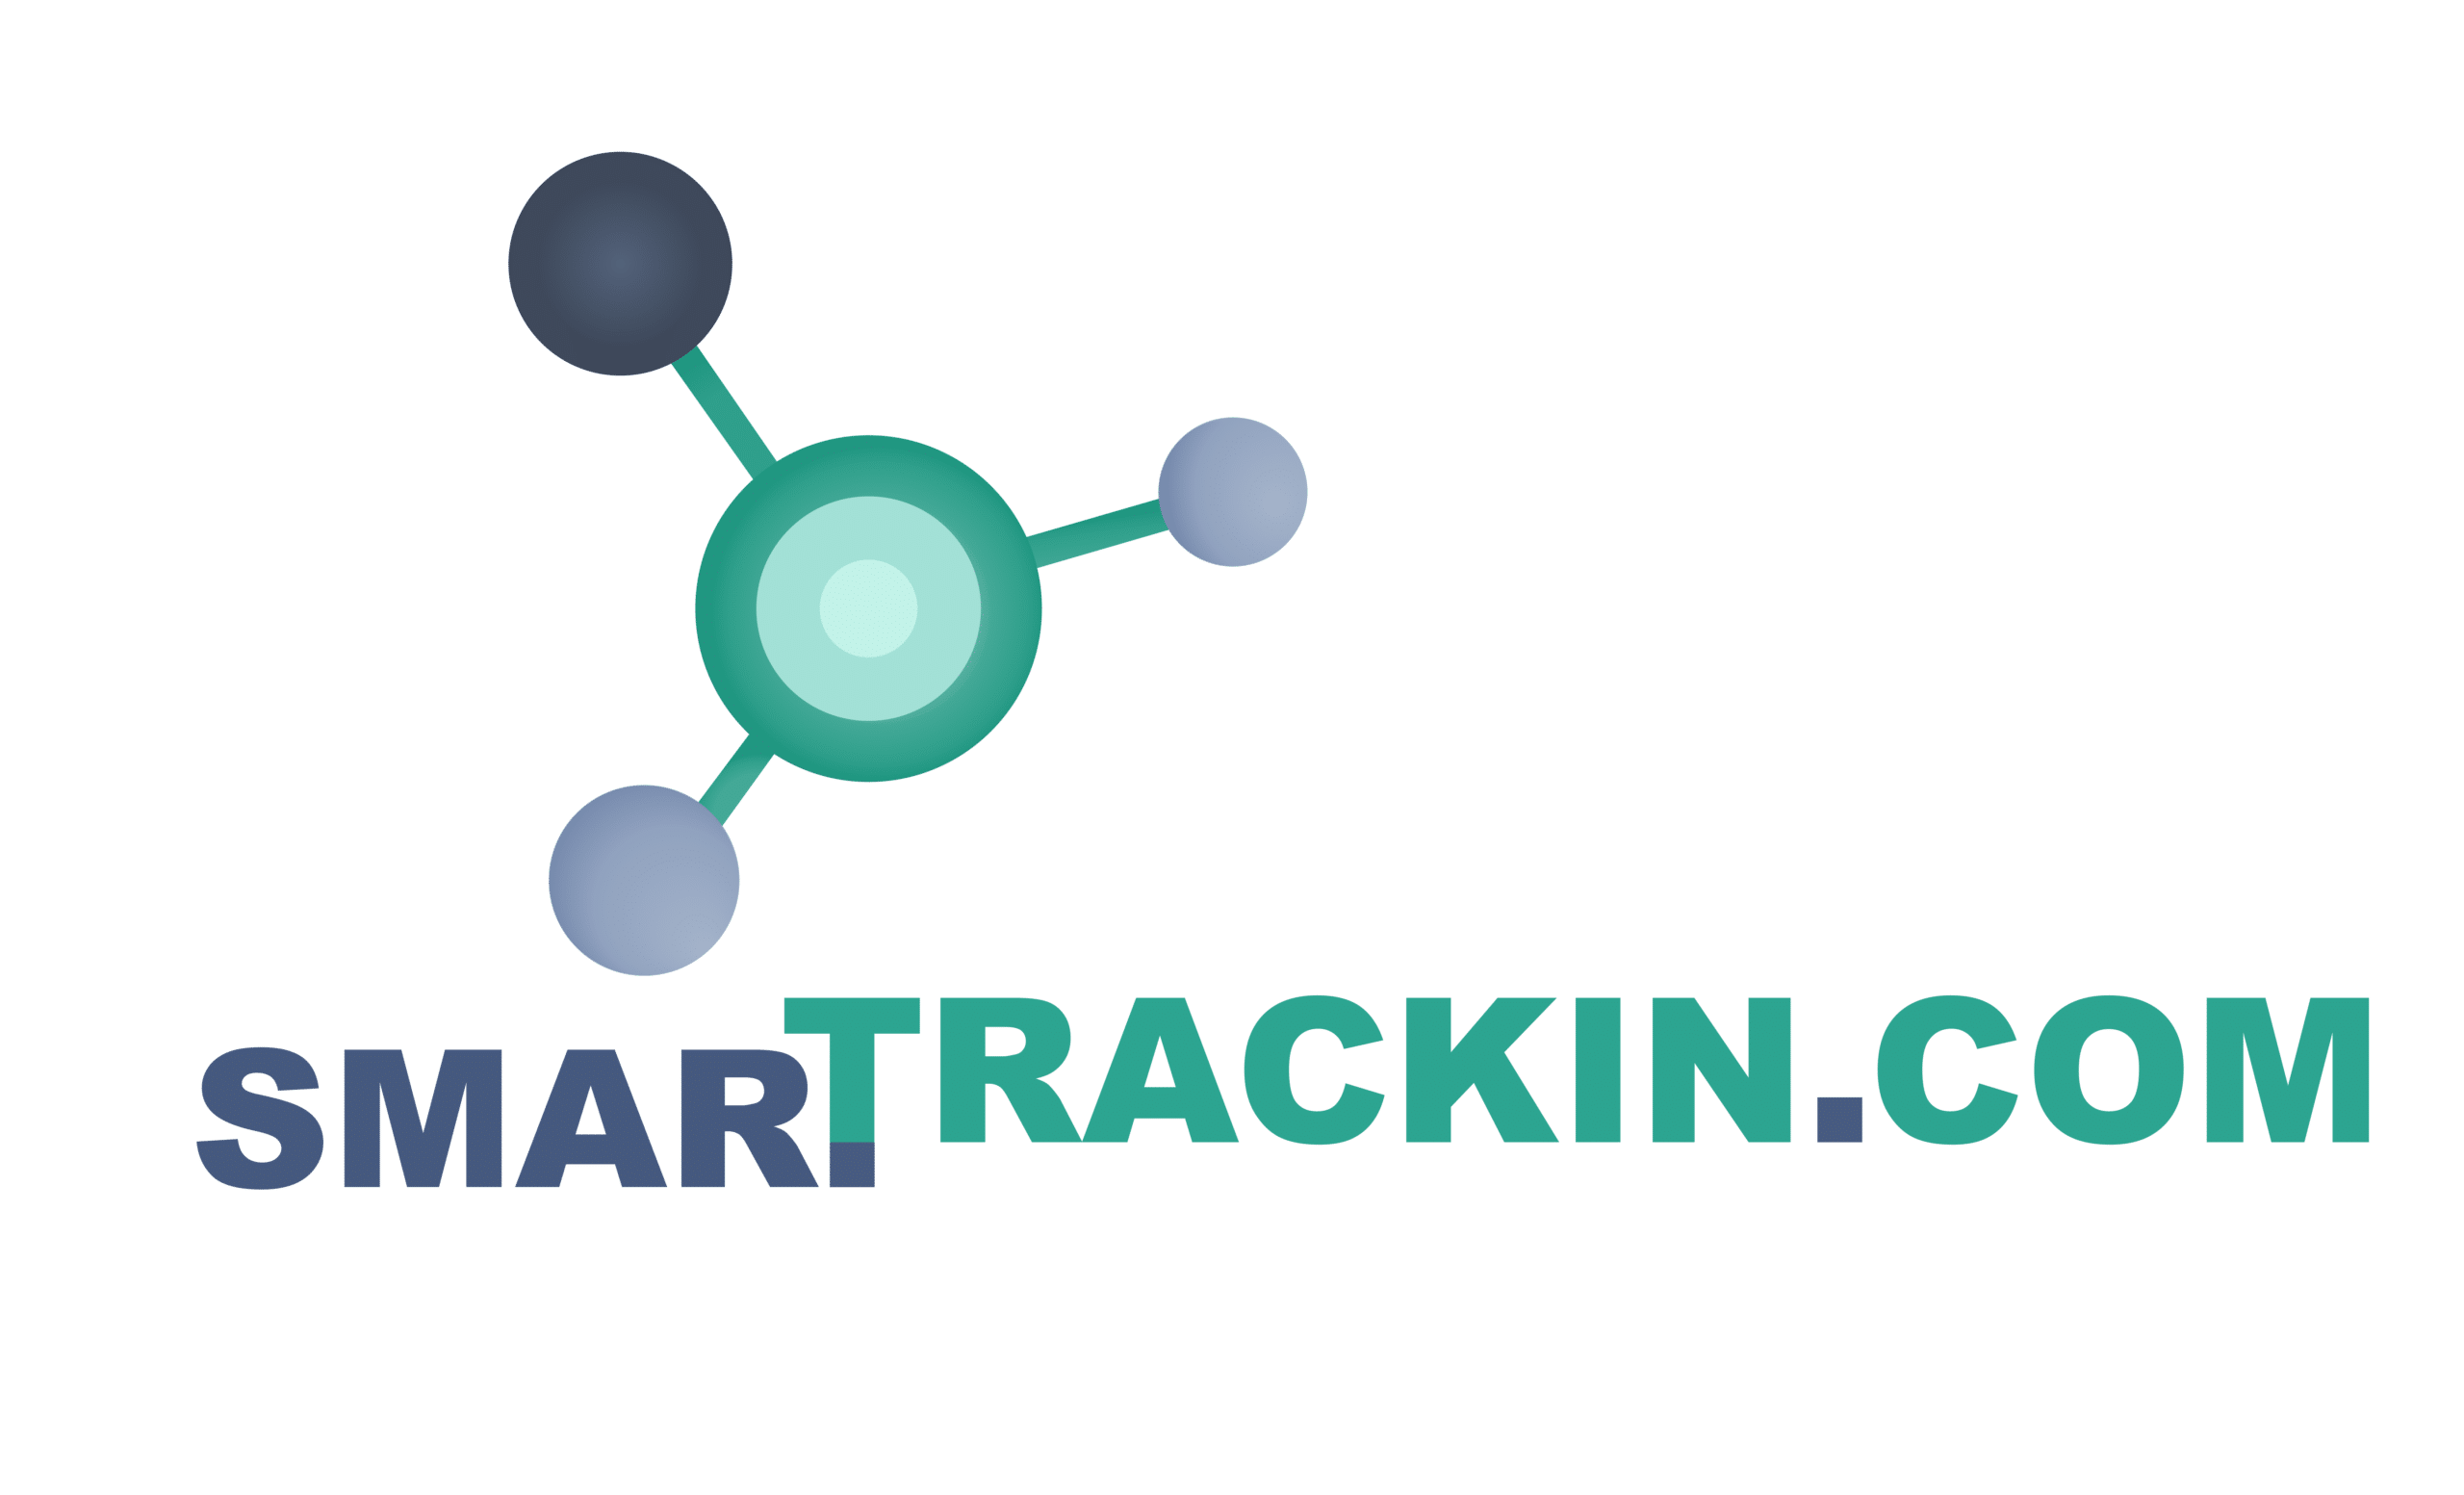 Smart Trackincom